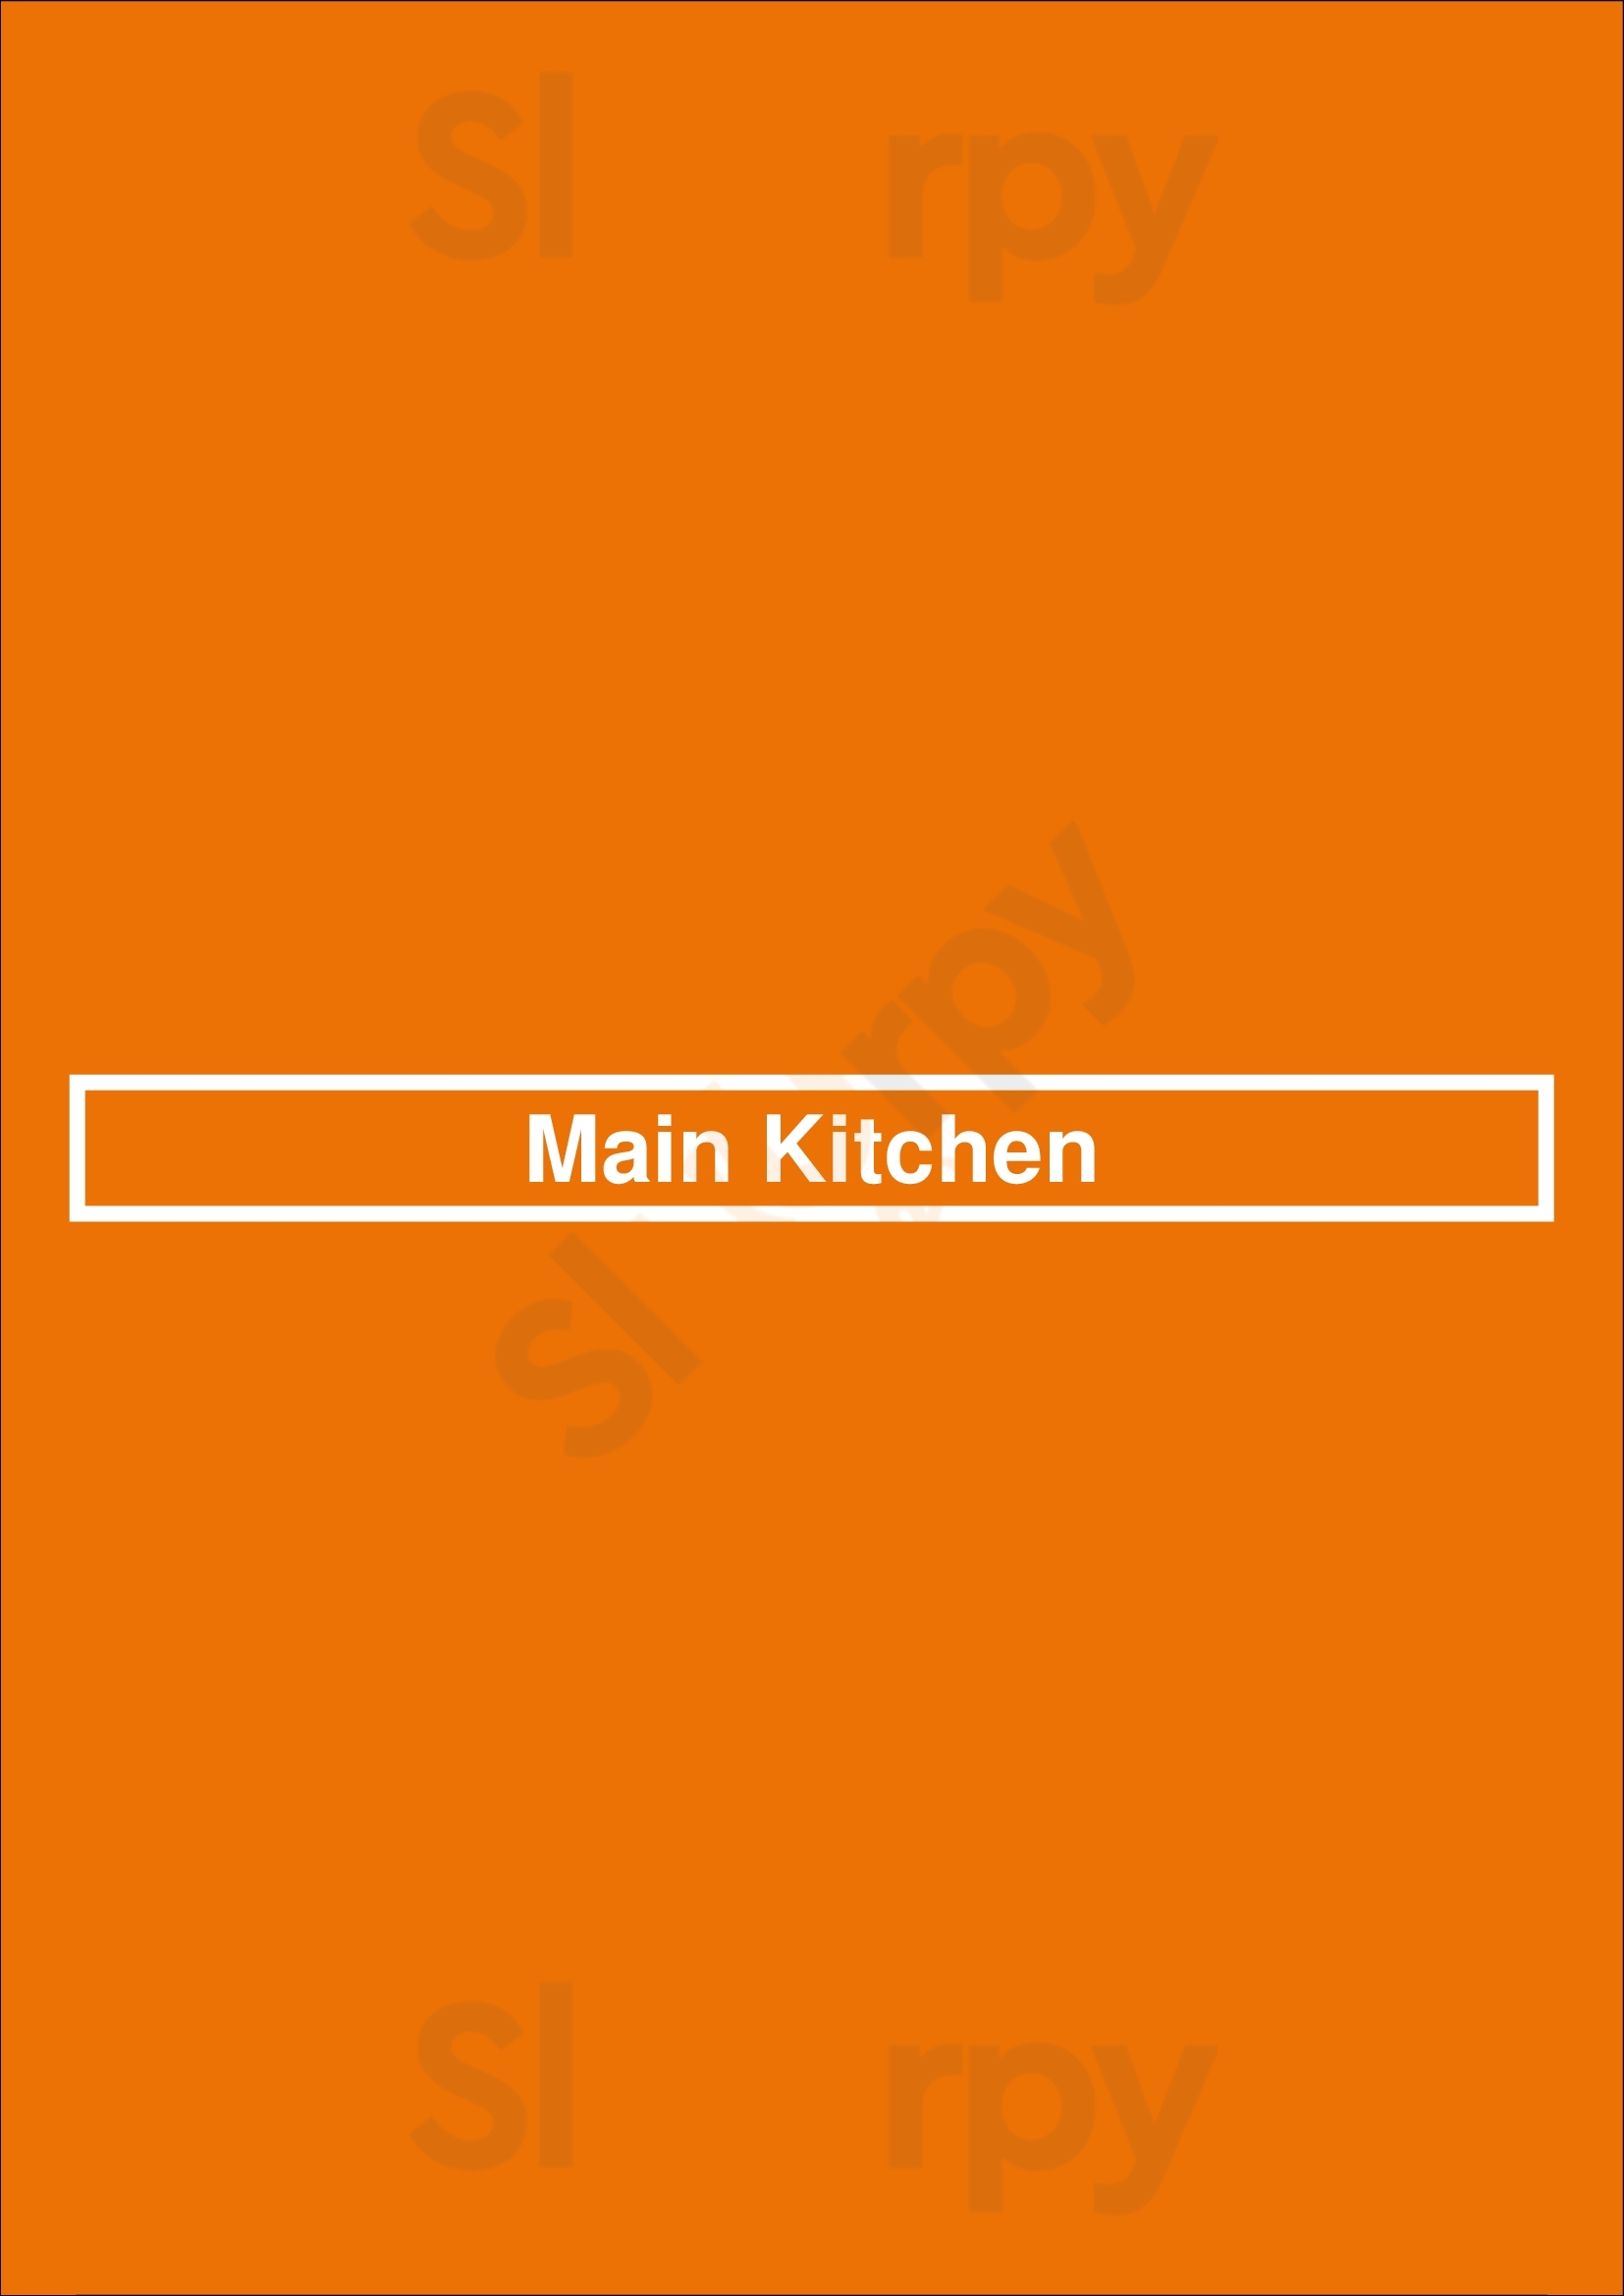 Main Kitchen Houston Menu - 1